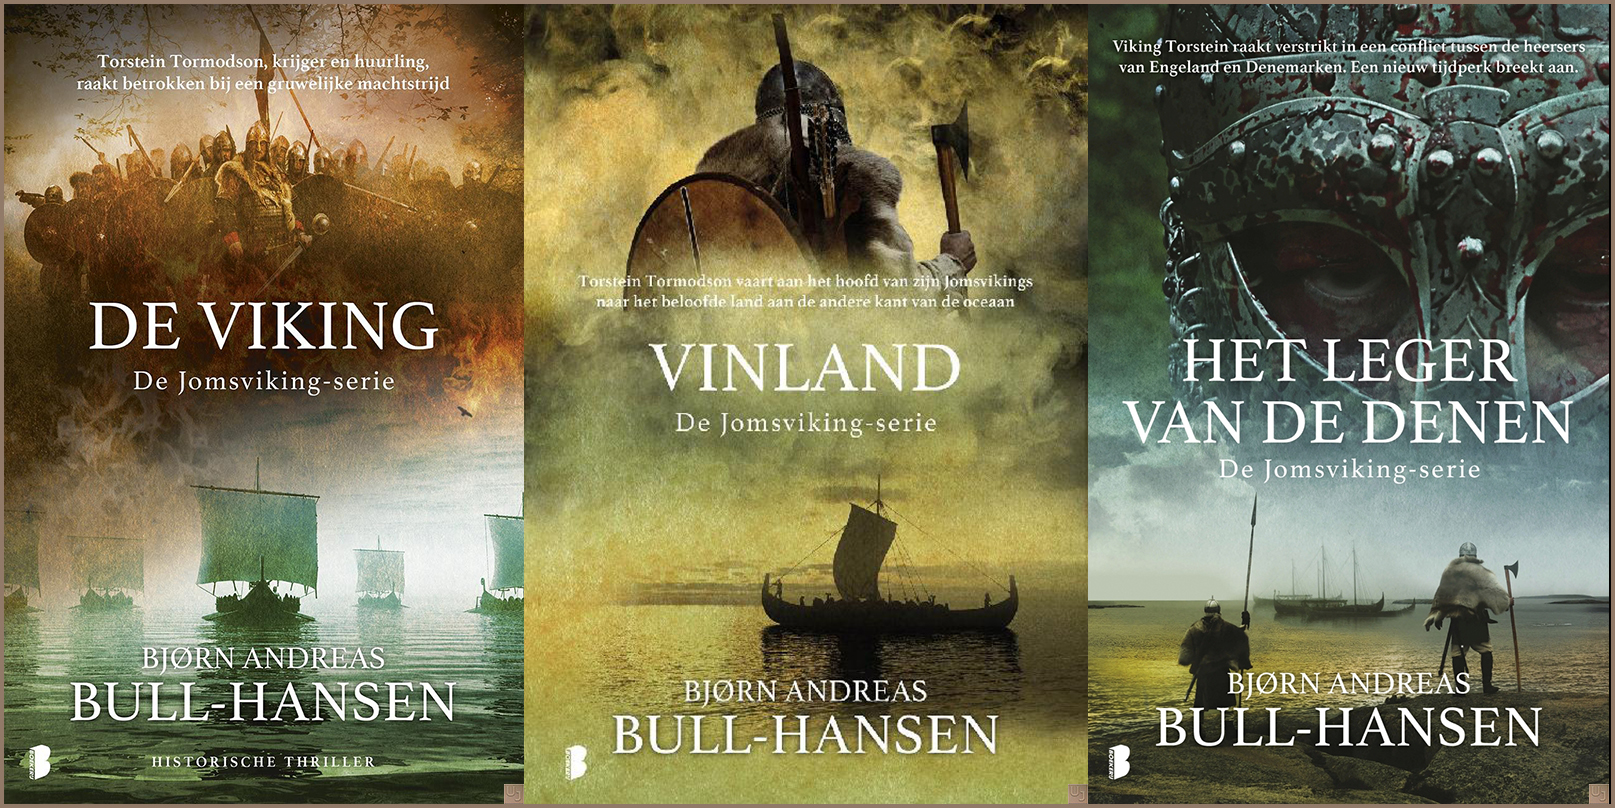 Bjørn Andreas Bull-Hansen - Jomsviking-serie (3 delen)